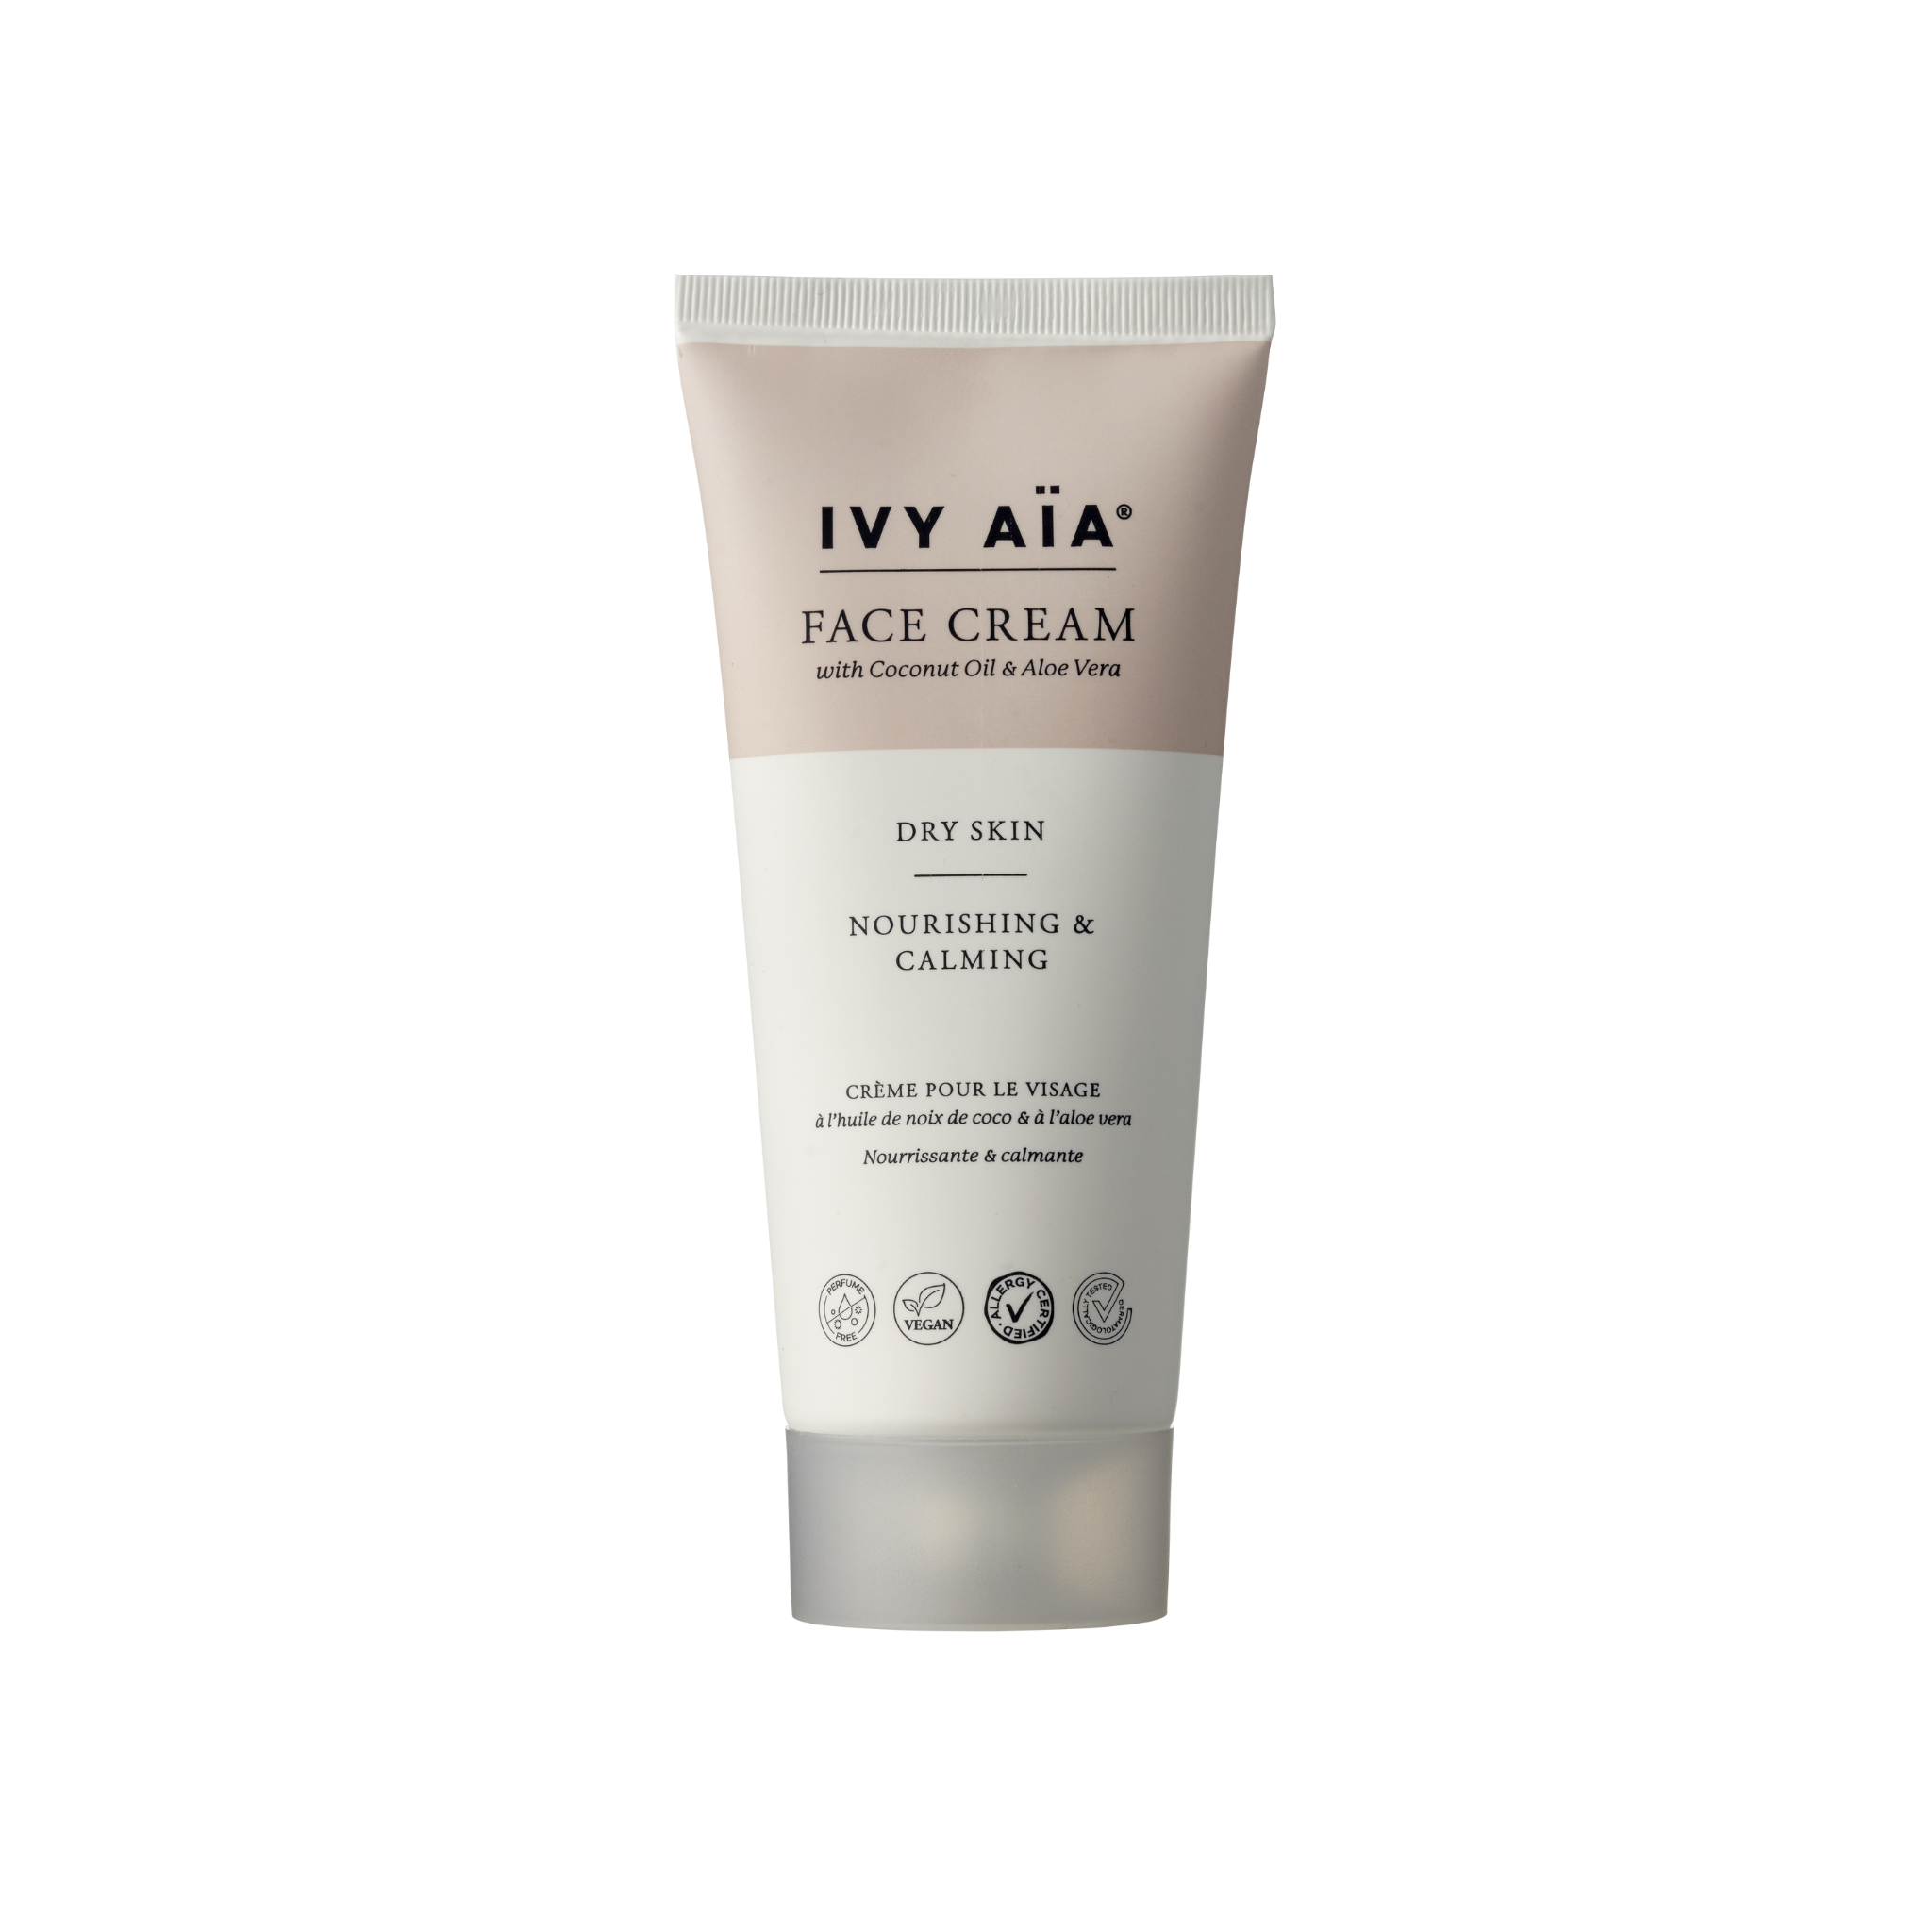 IVY AïA Face Cream with Coconut Oil & Aloe Vera, Dry Skin